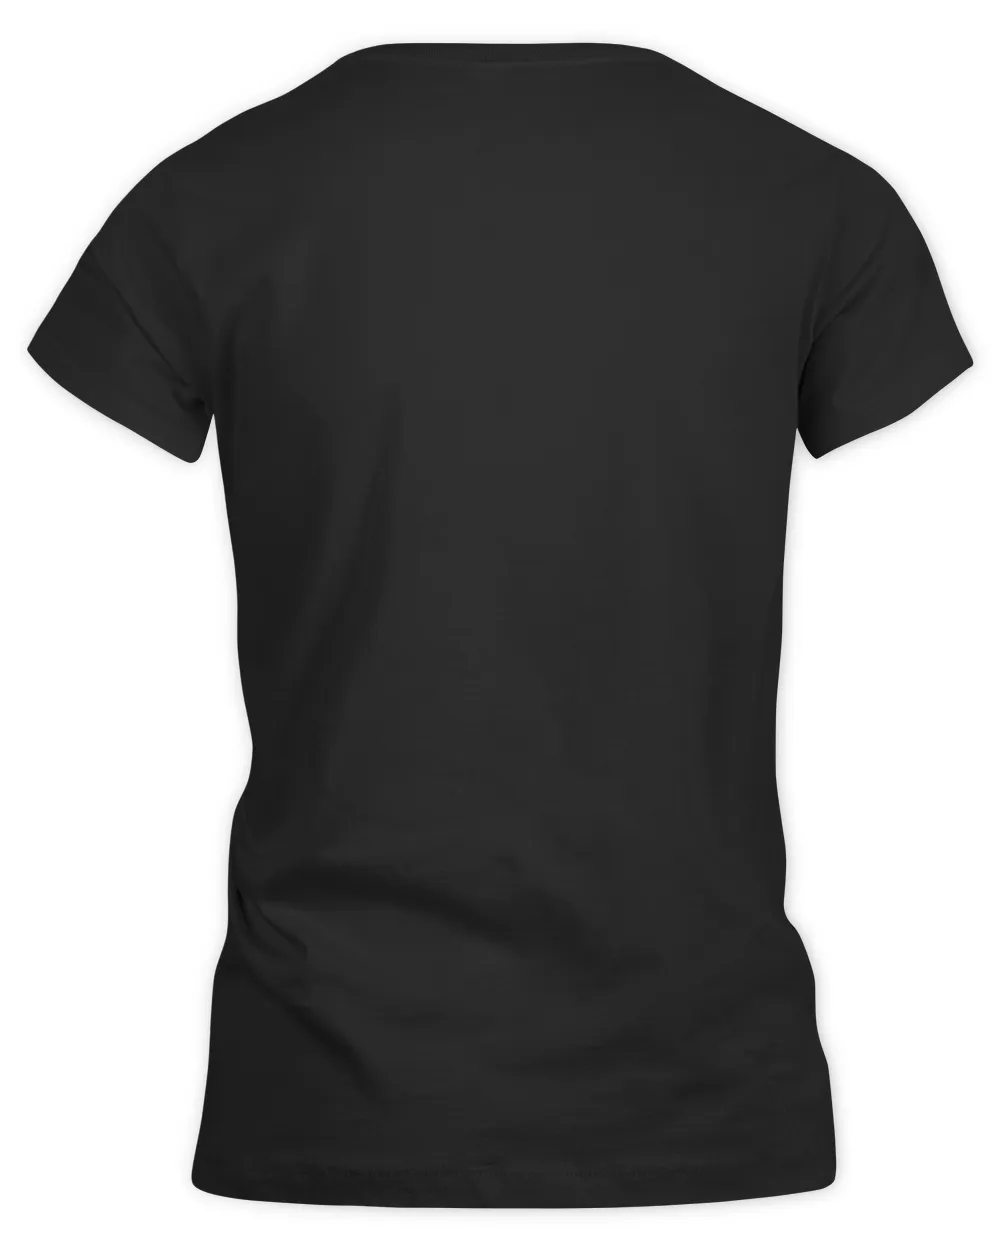 Teacher Design For Men Women I'll Just Wait Until It's Quiet T-Shirt